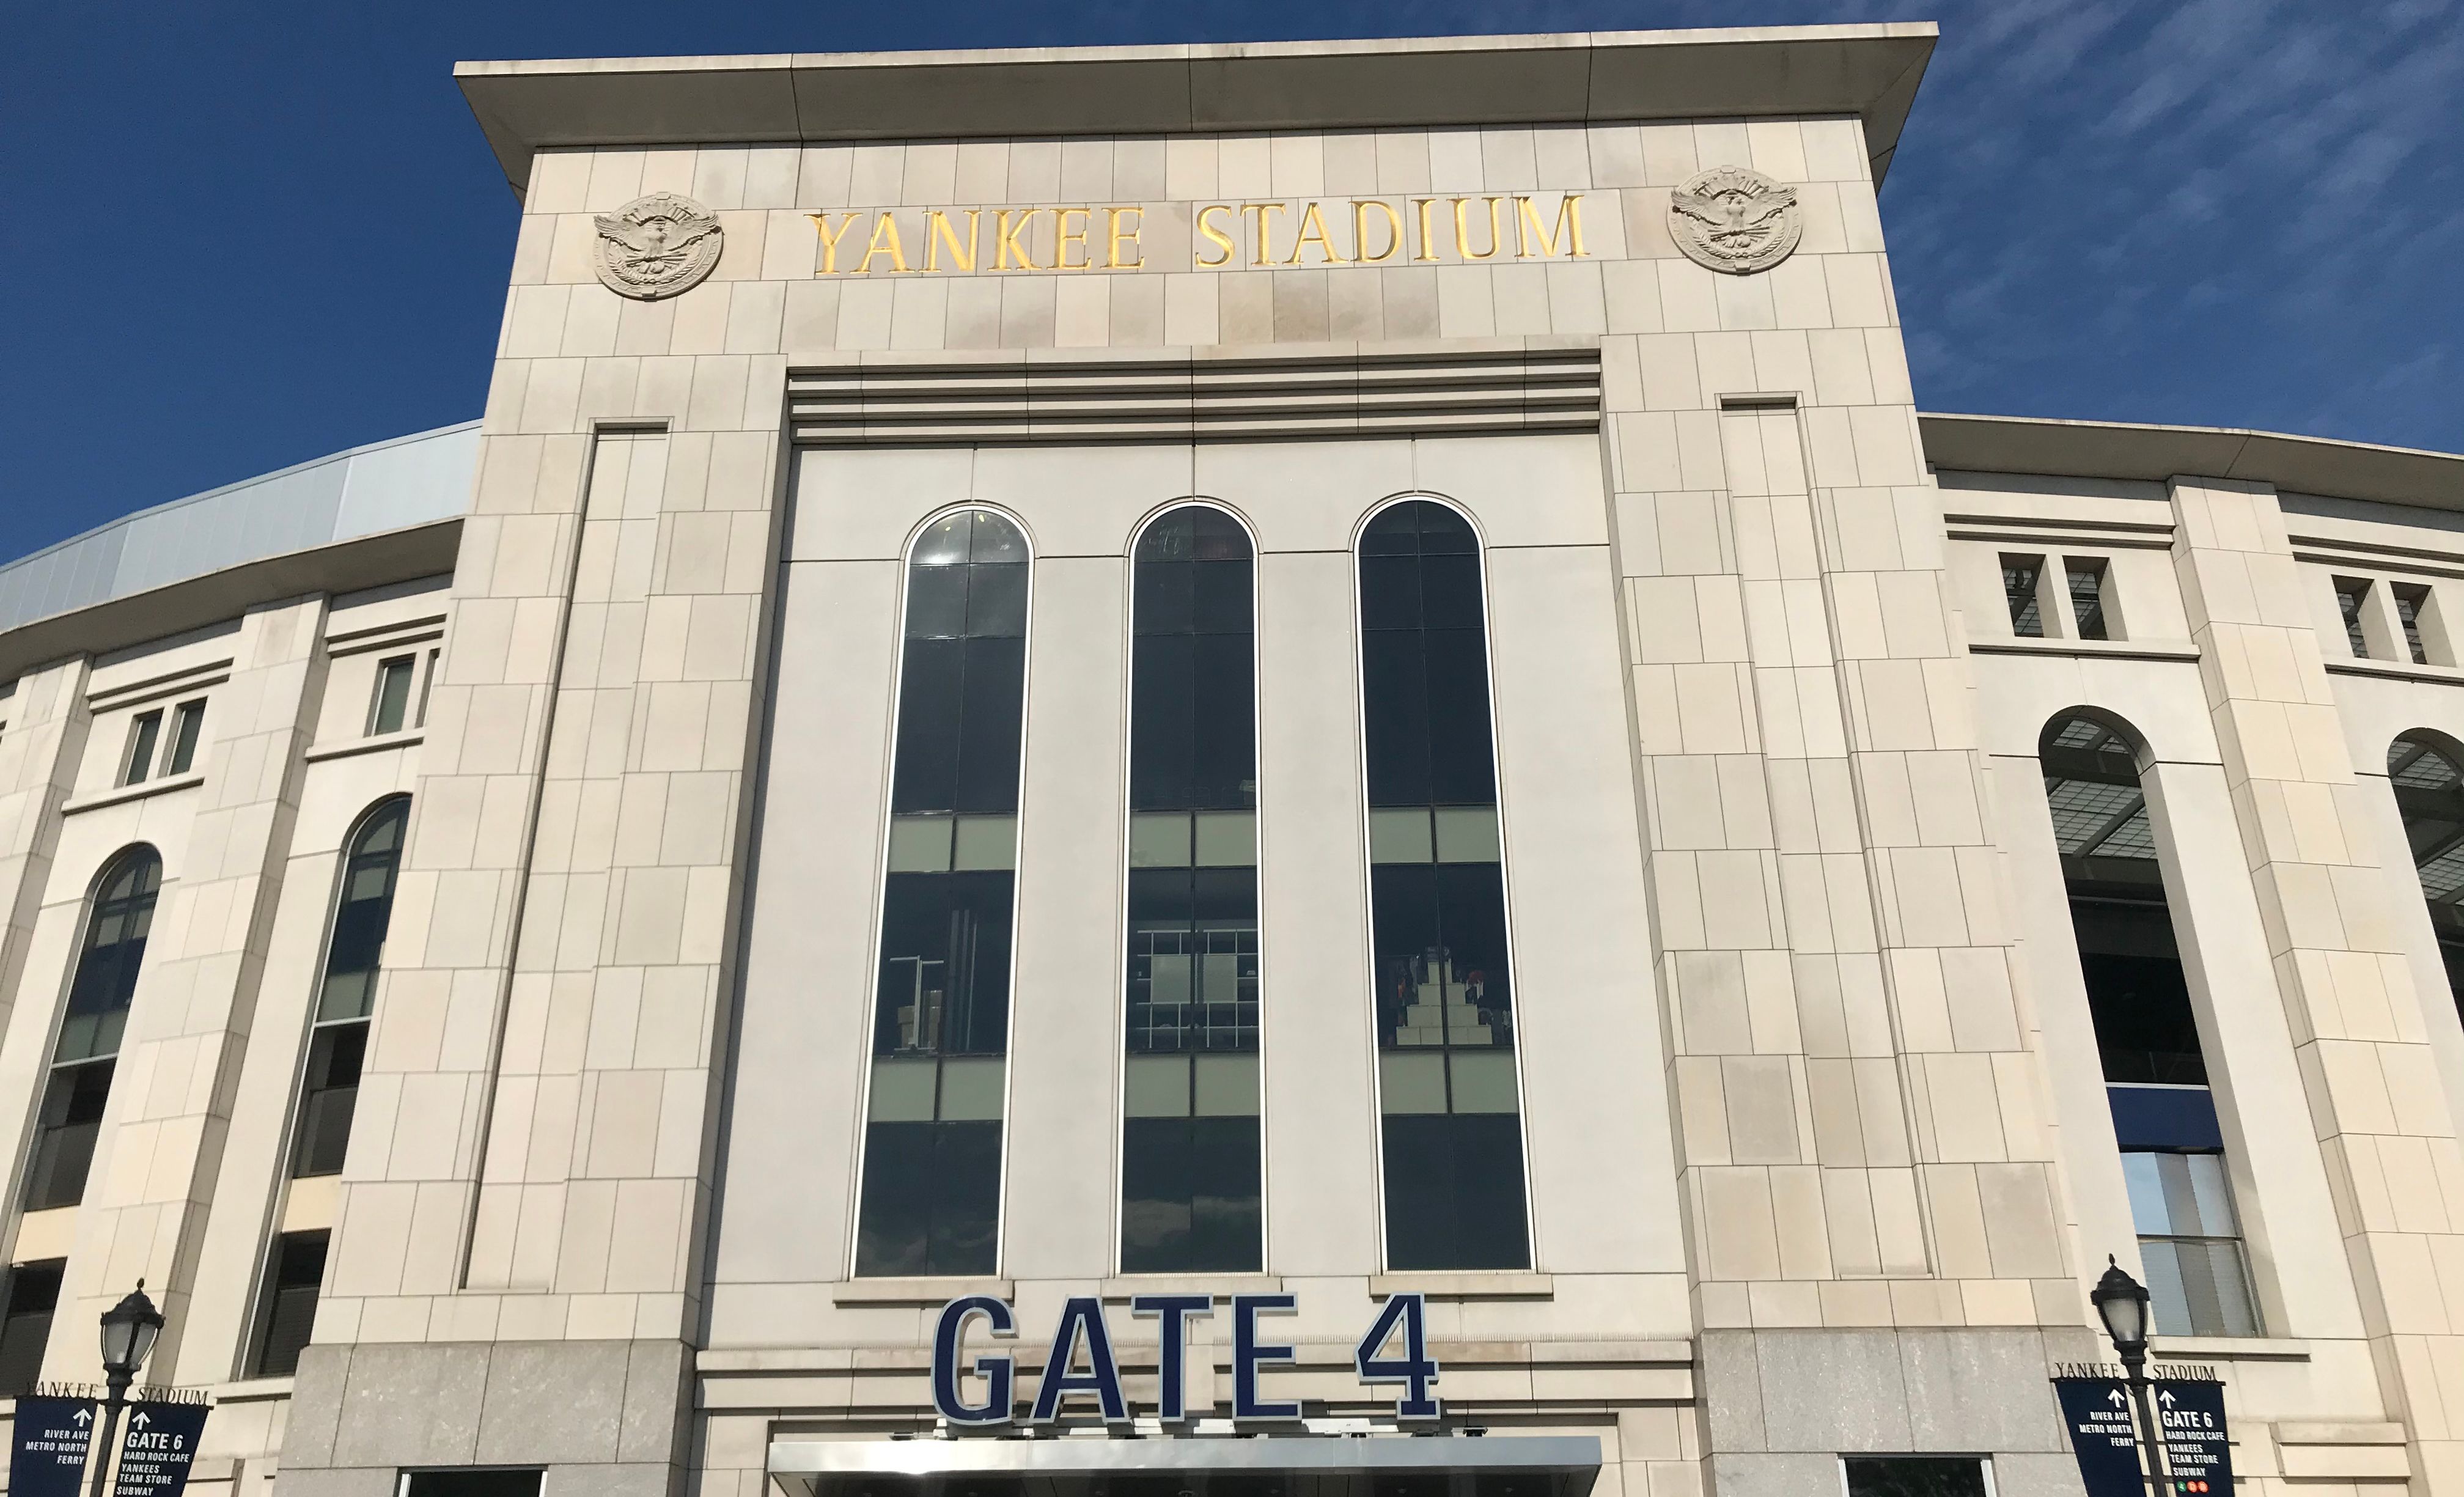 Yankee Stadium Team Store